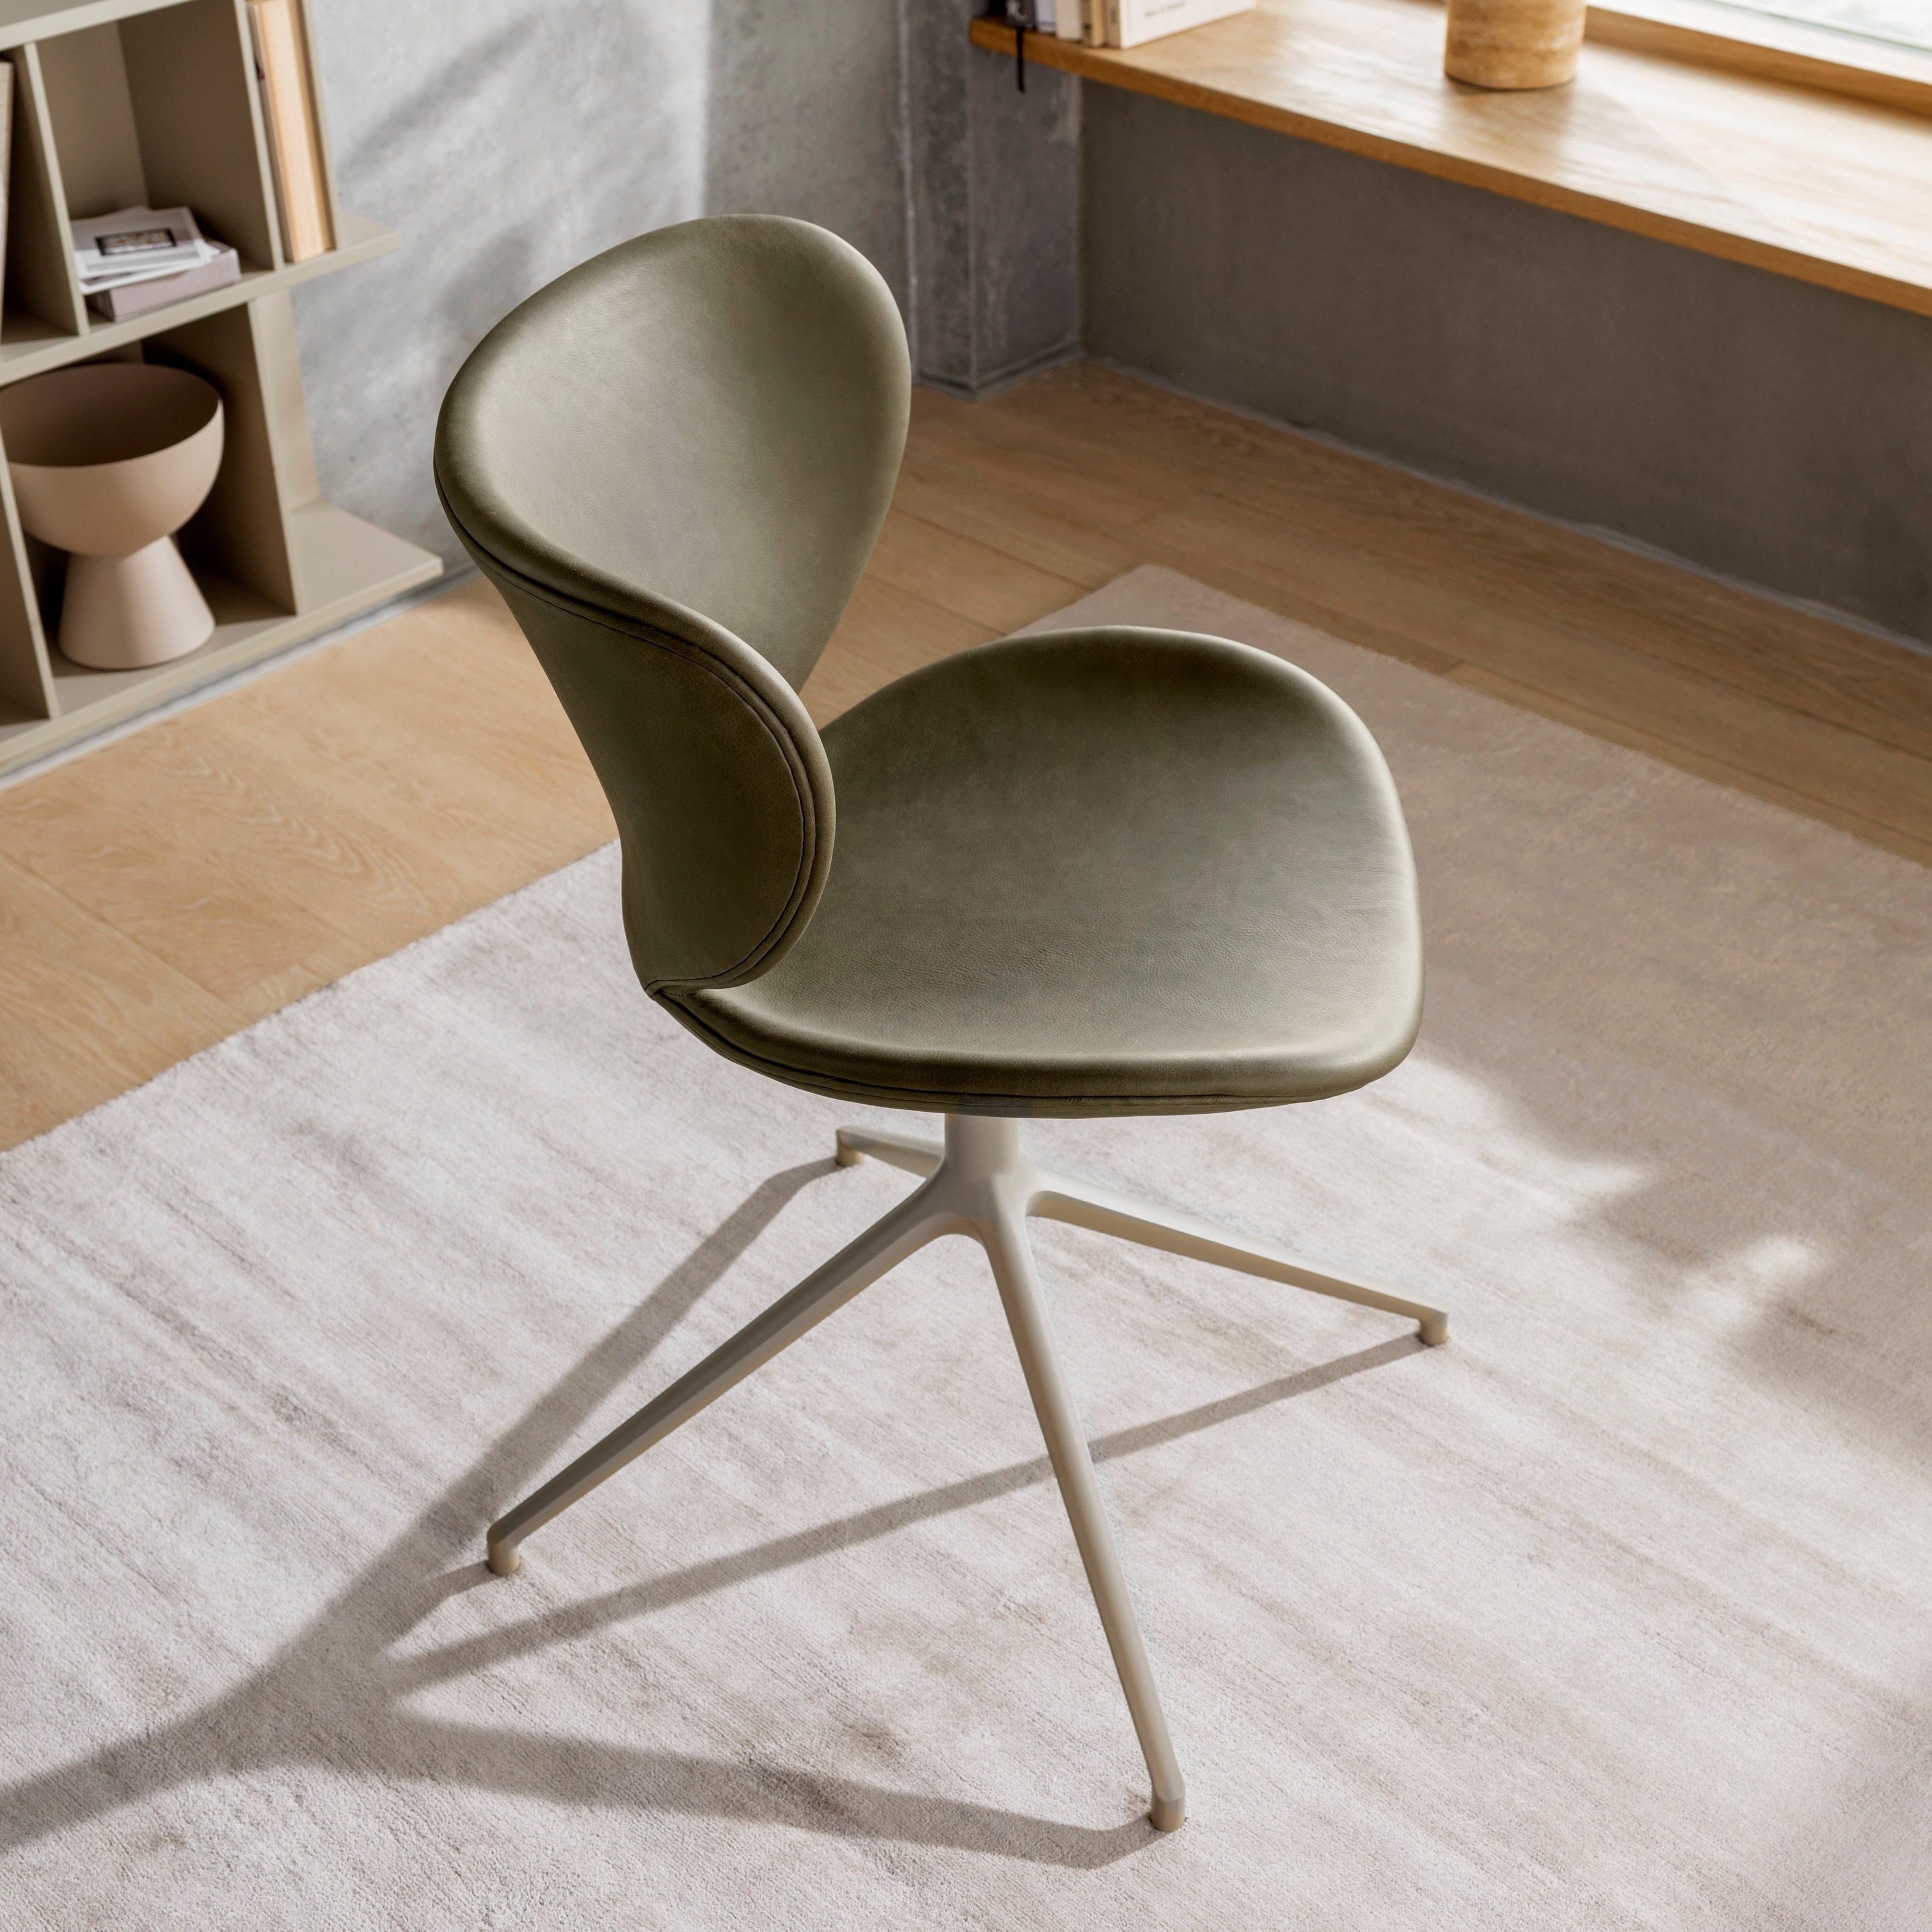 Olivengrønn stol med metallunderstell i et solrikt rom med trehyller og vindu.